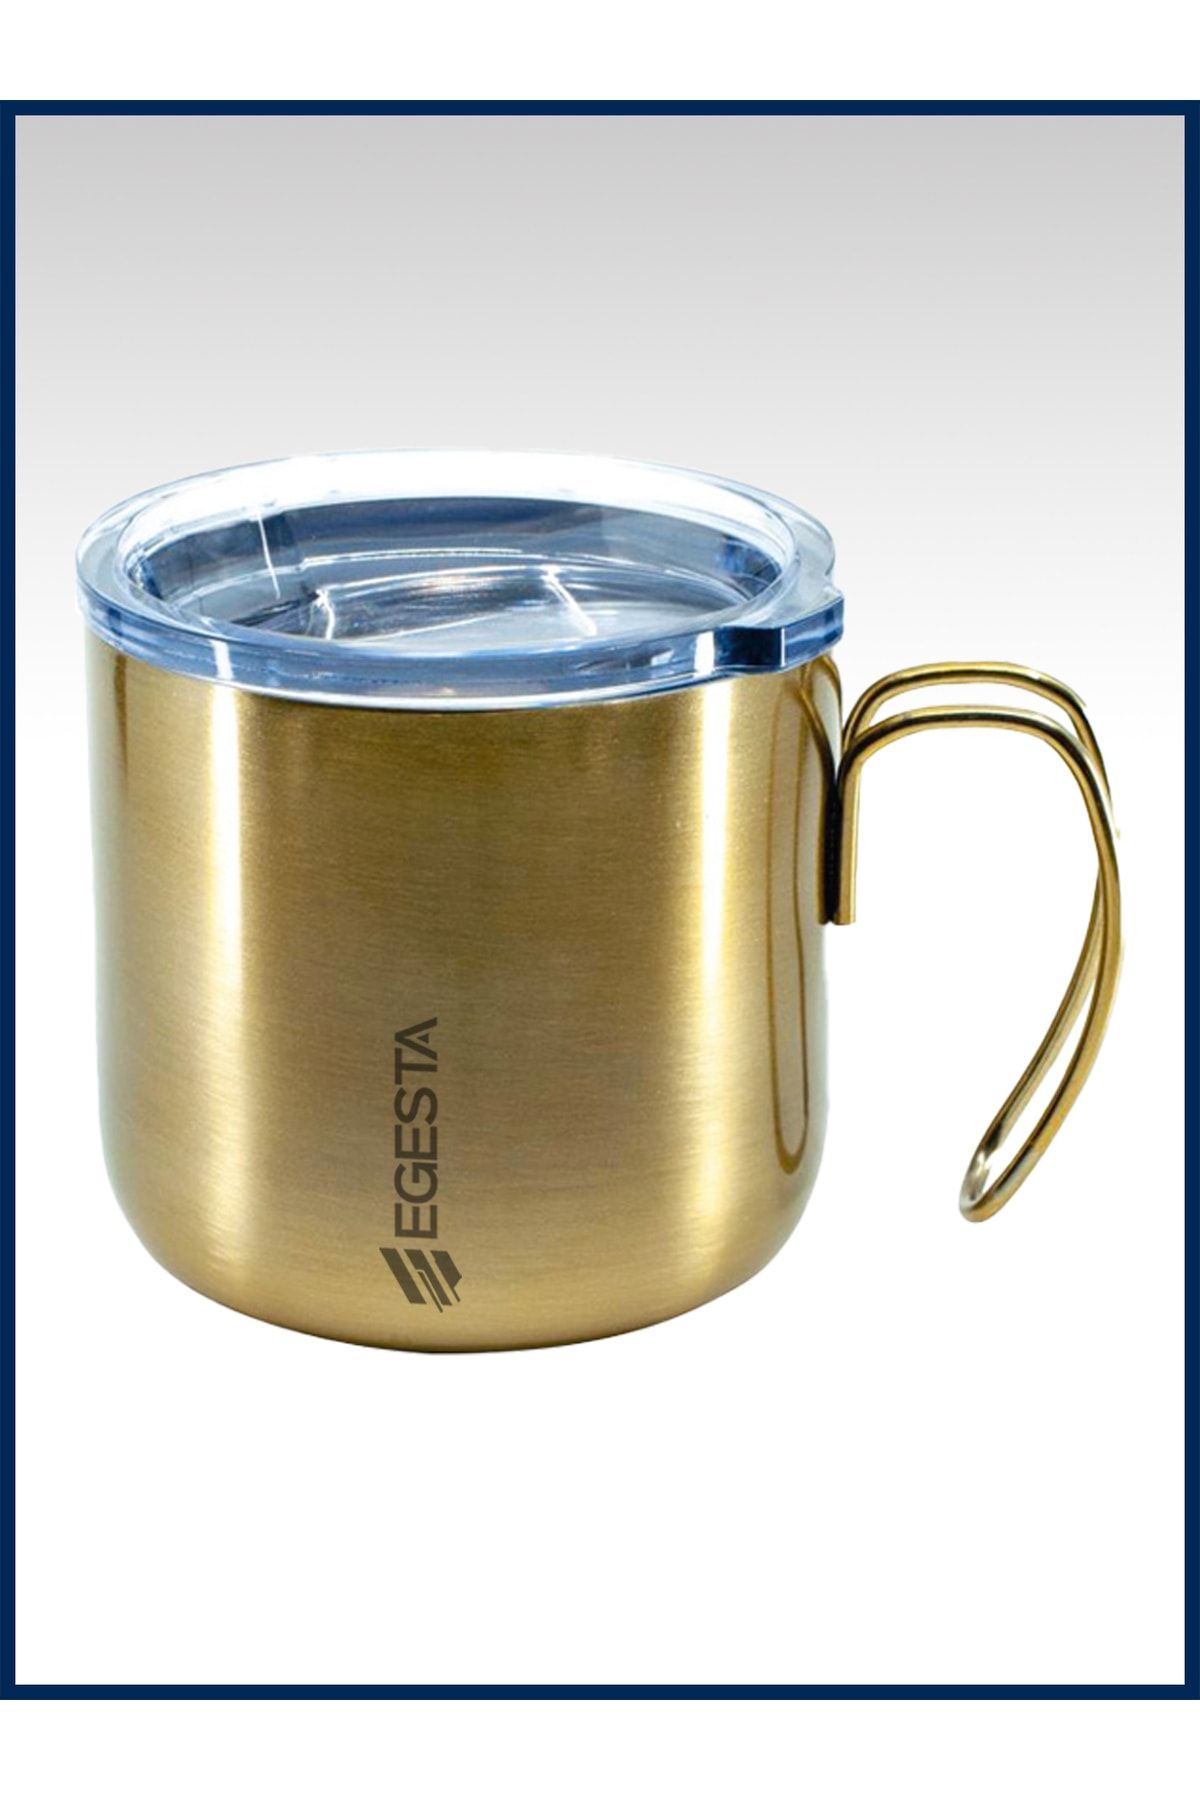 EGESTA Starbucks Çelik Termos Mug / Bardak Kupa - 240 Ml - Altın